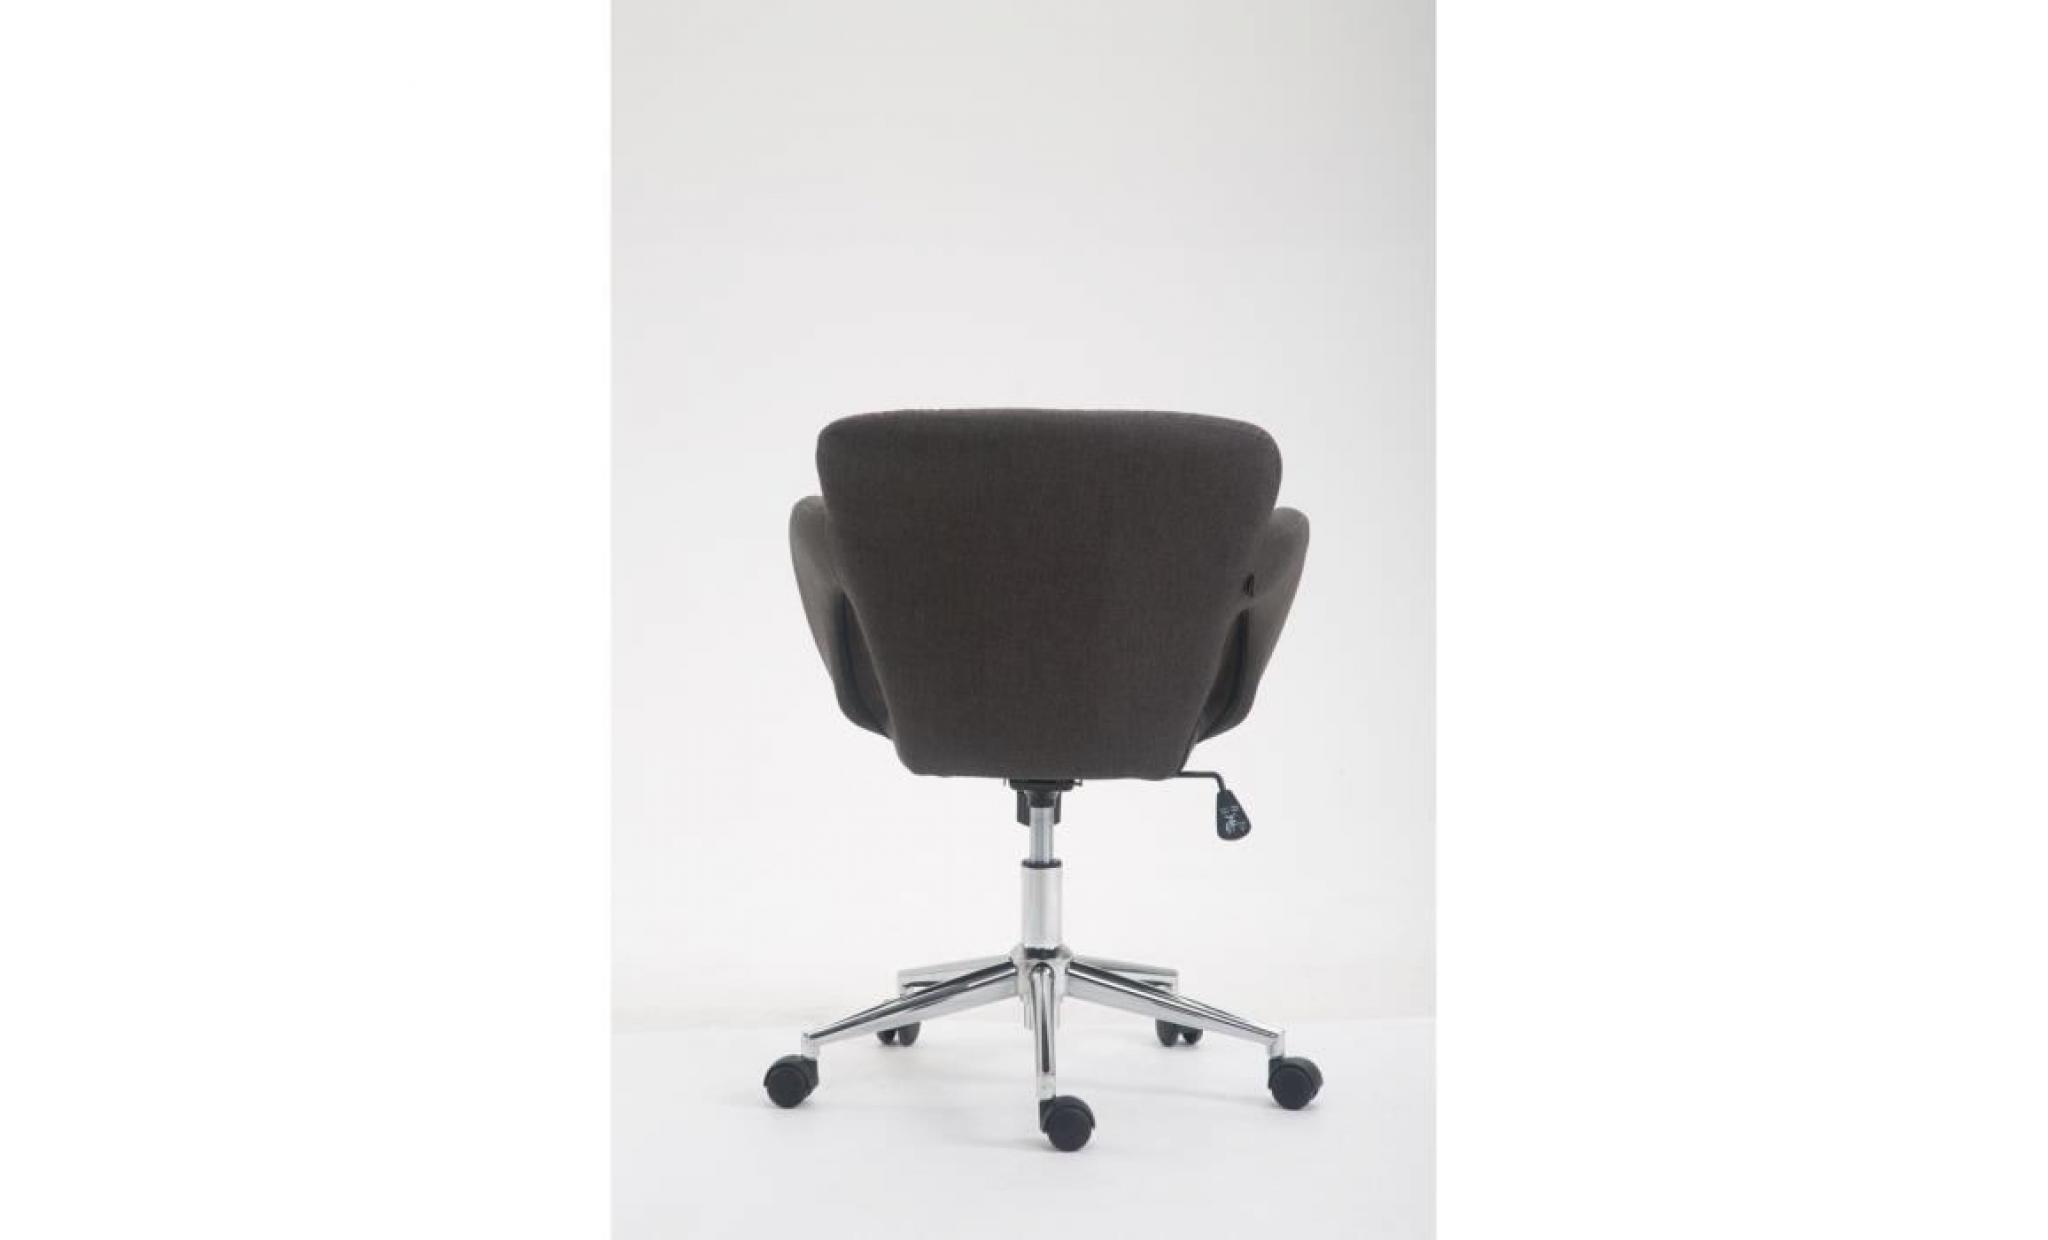 clp chaise de bureau edison en tissu, fauteuil de bureau avec accoudoirs, mécanisme d'inclinaison intégré, hauteur ajustable pas cher